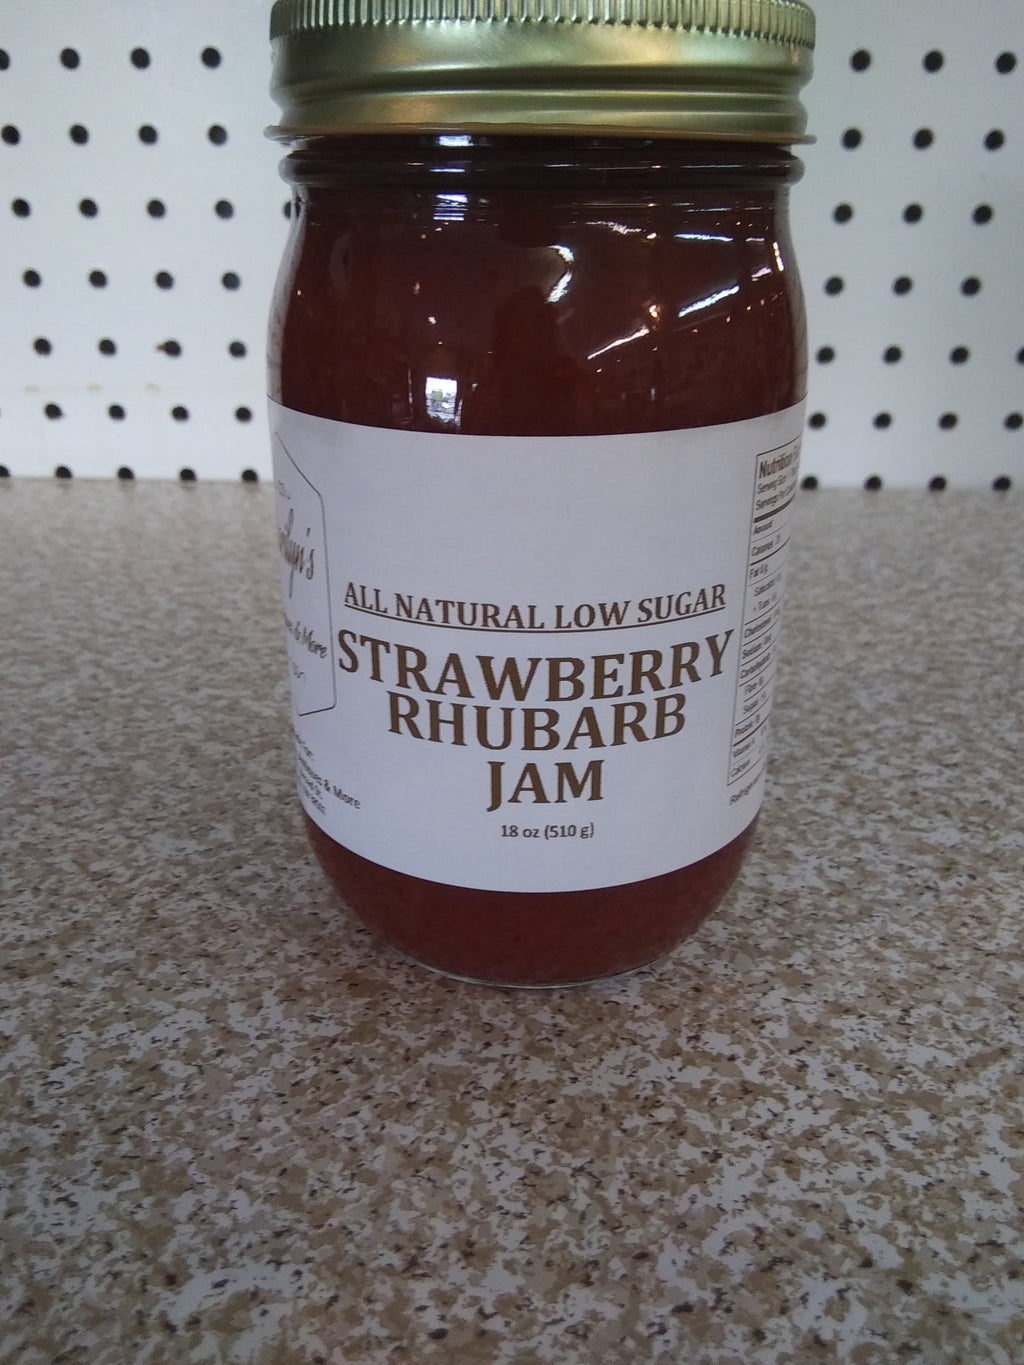 *All Natural Low Sugar Strawberry Rhubarb Jam*